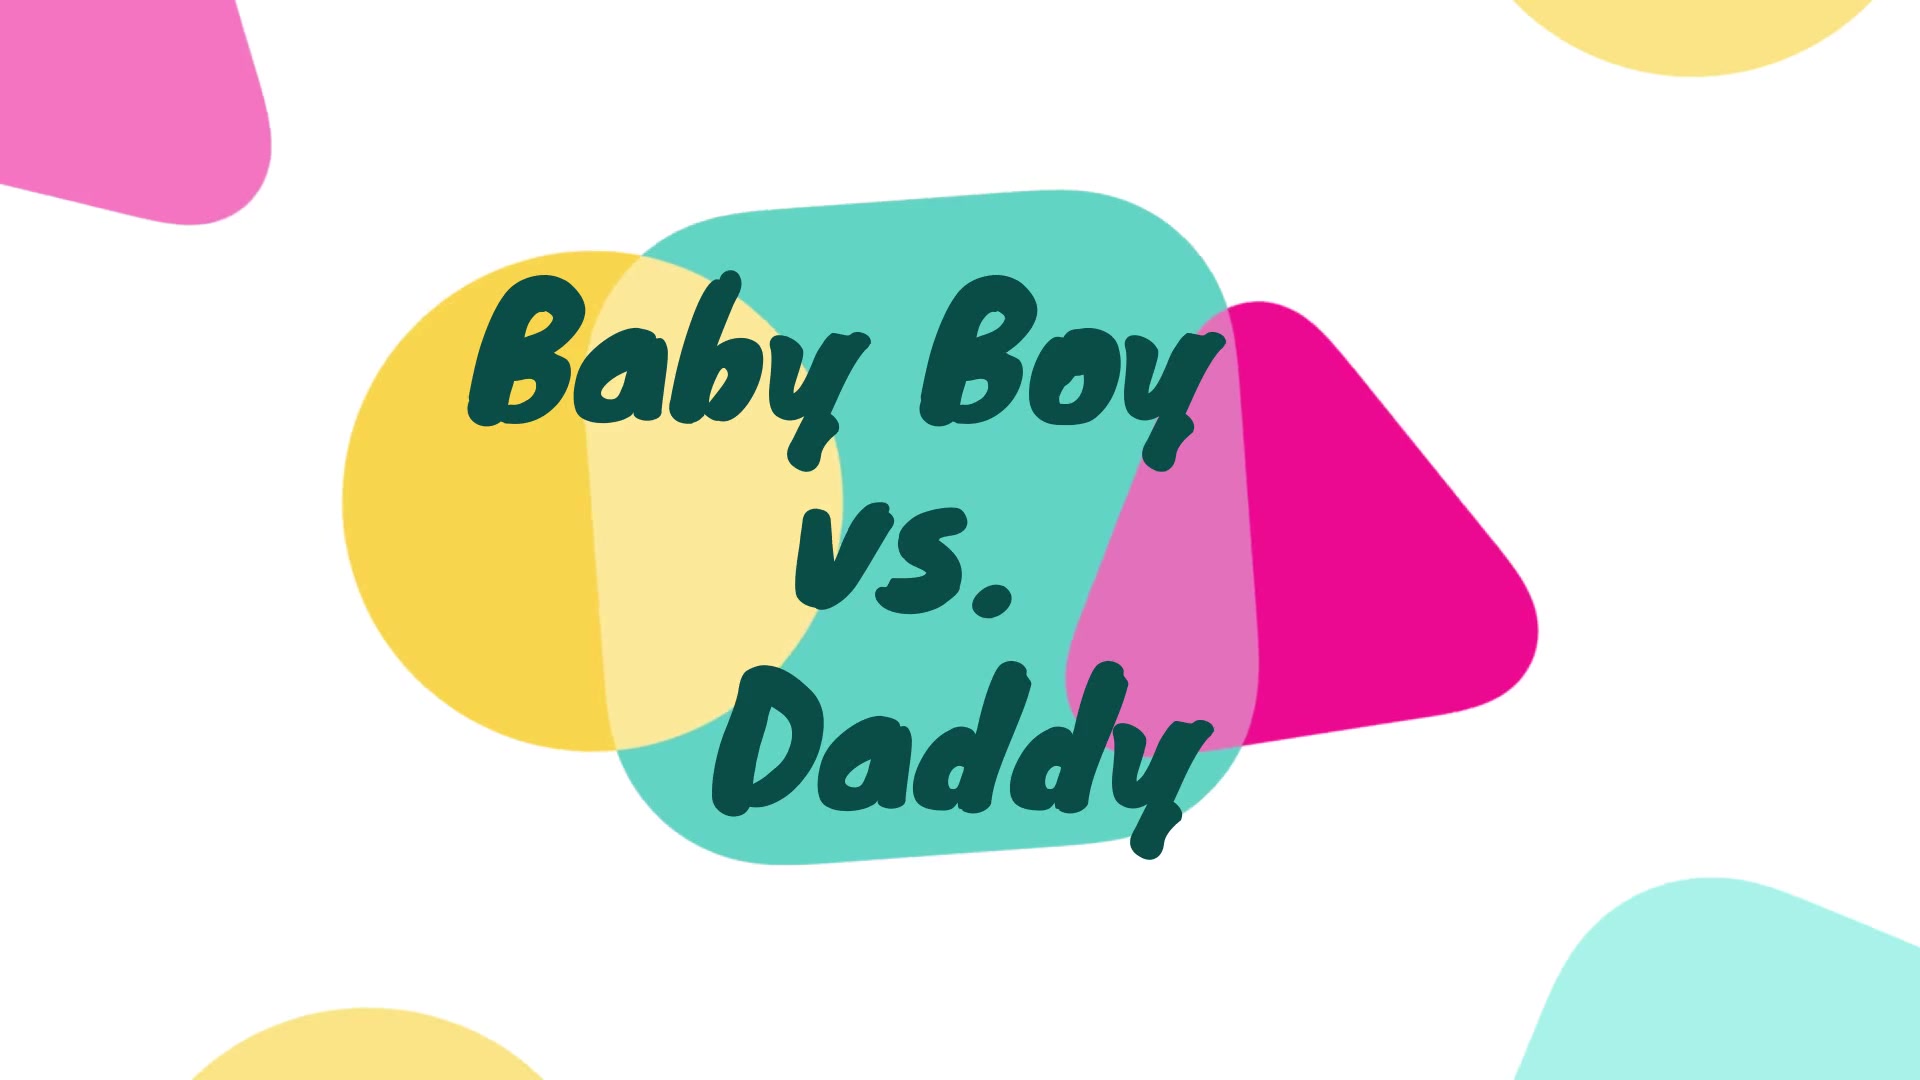 Baby Boy vs. Daddy 7